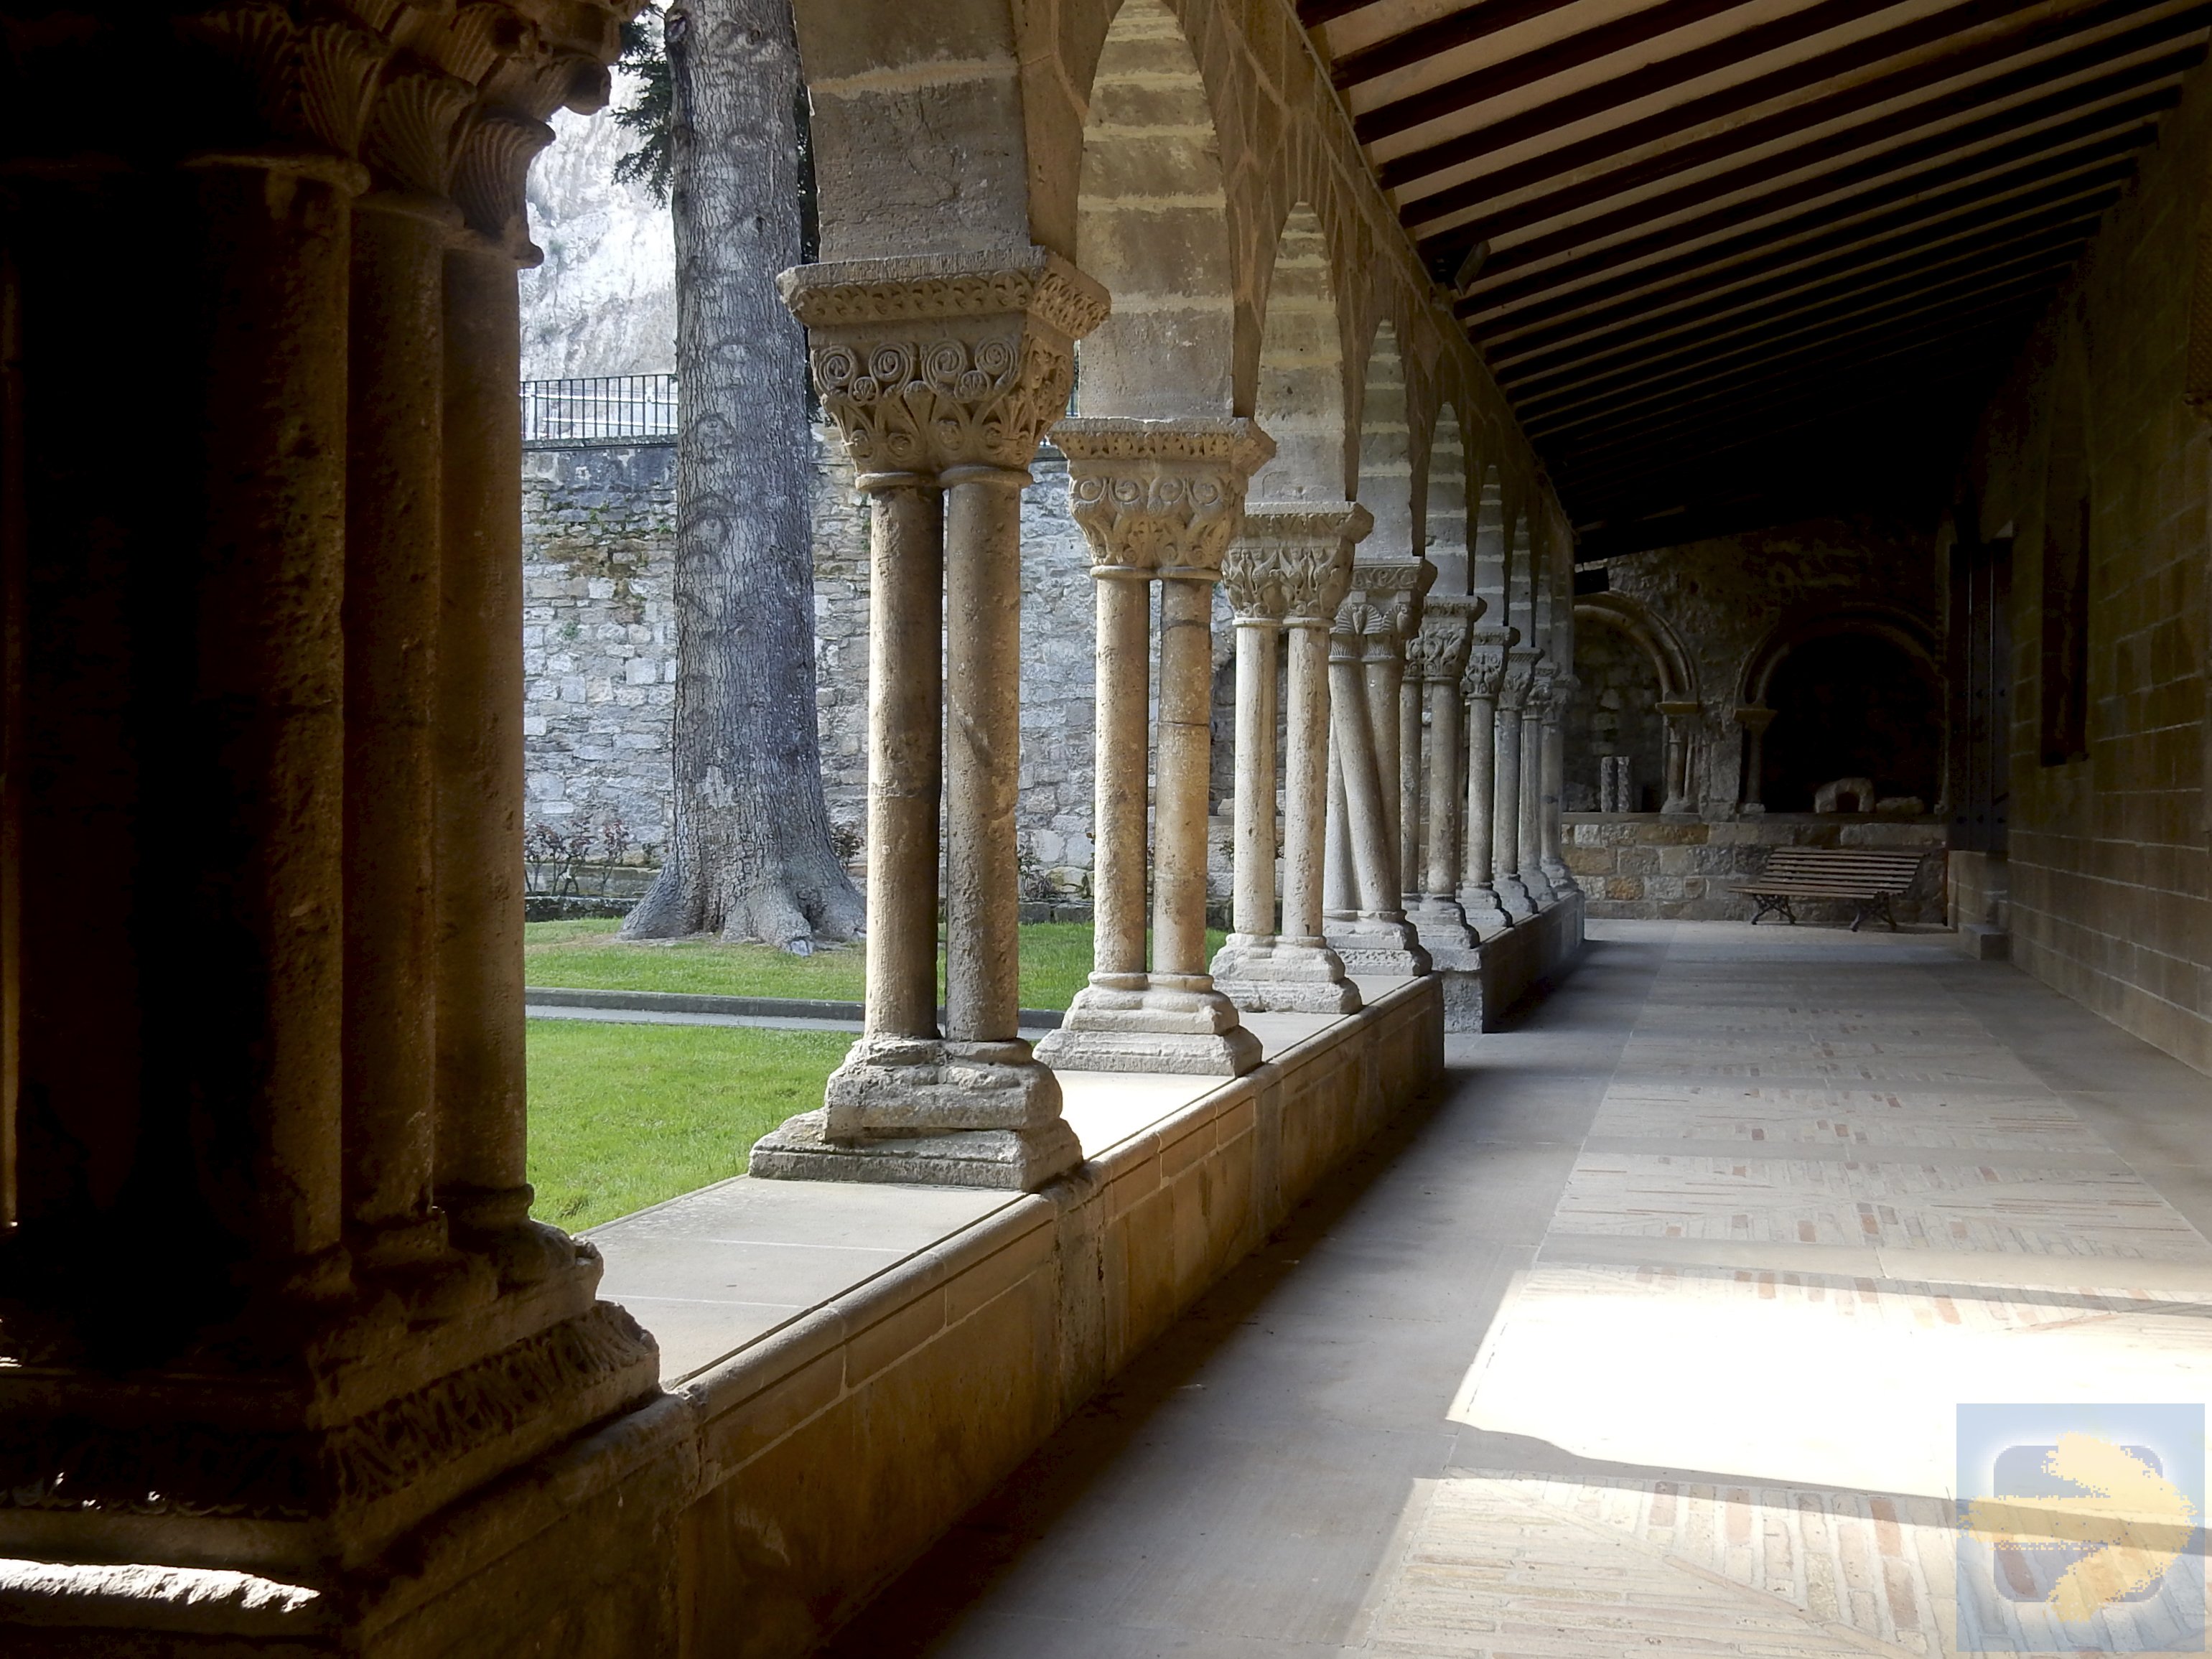 The cloister at SanPedro Church in Estella